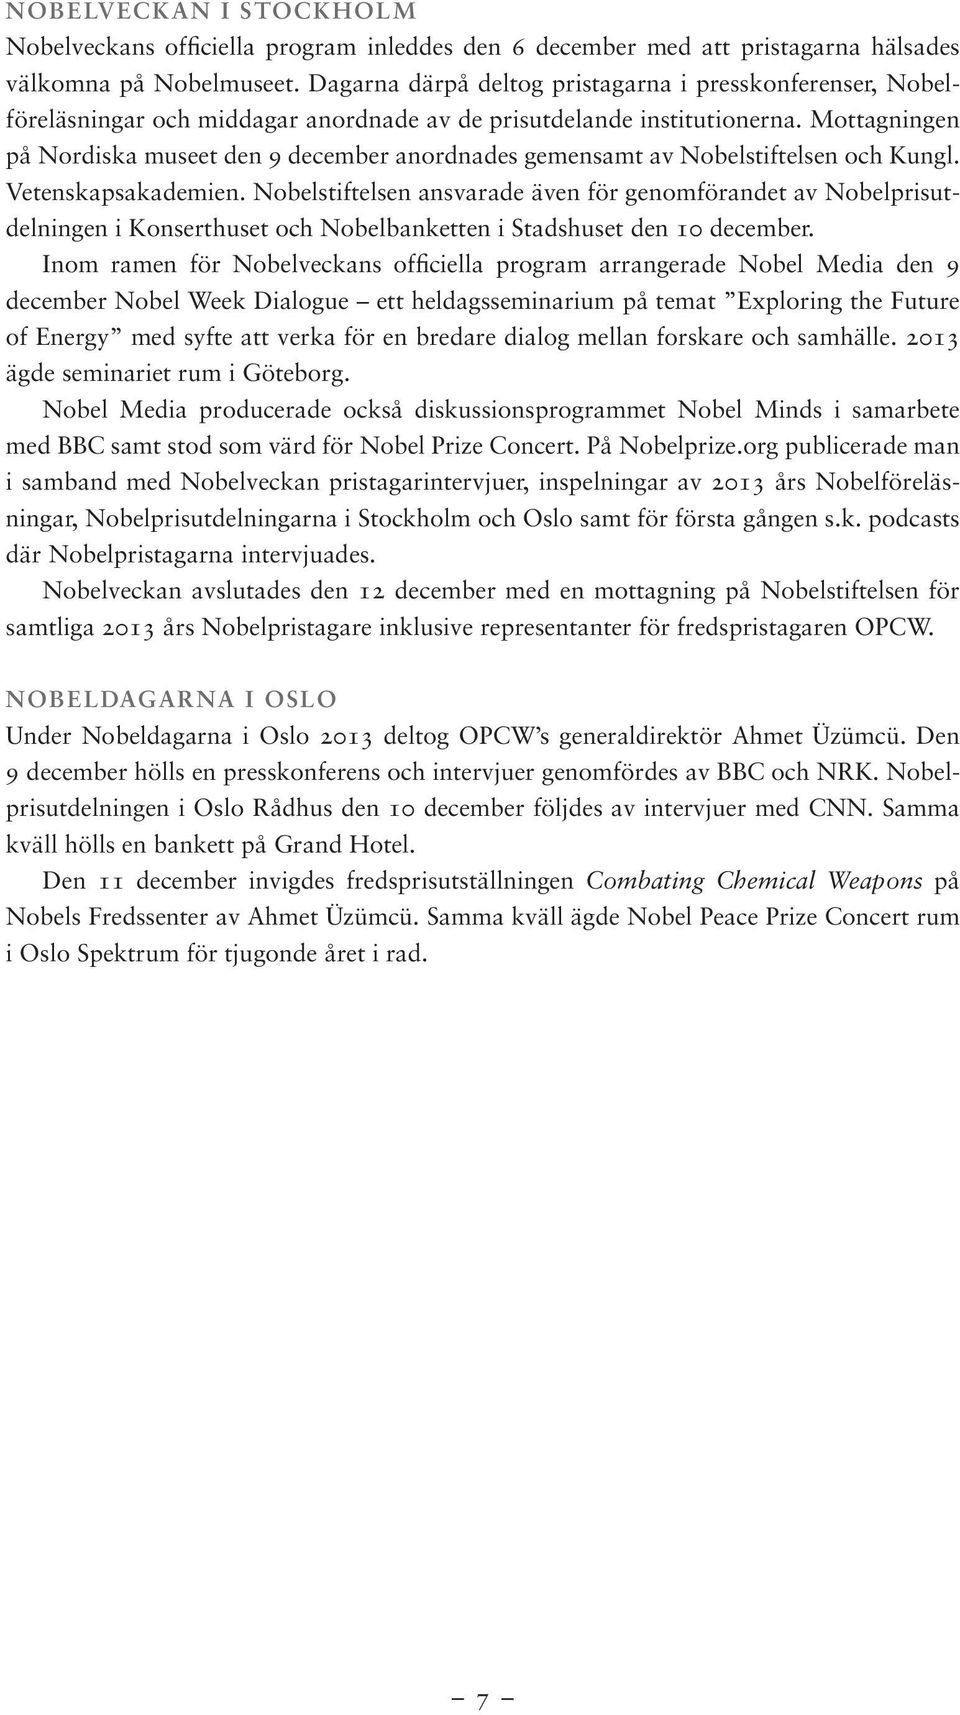 Mottagningen på Nordiska museet den 9 december anordnades gemensamt av Nobelstiftelsen och Kungl. Vetenskapsakademien.